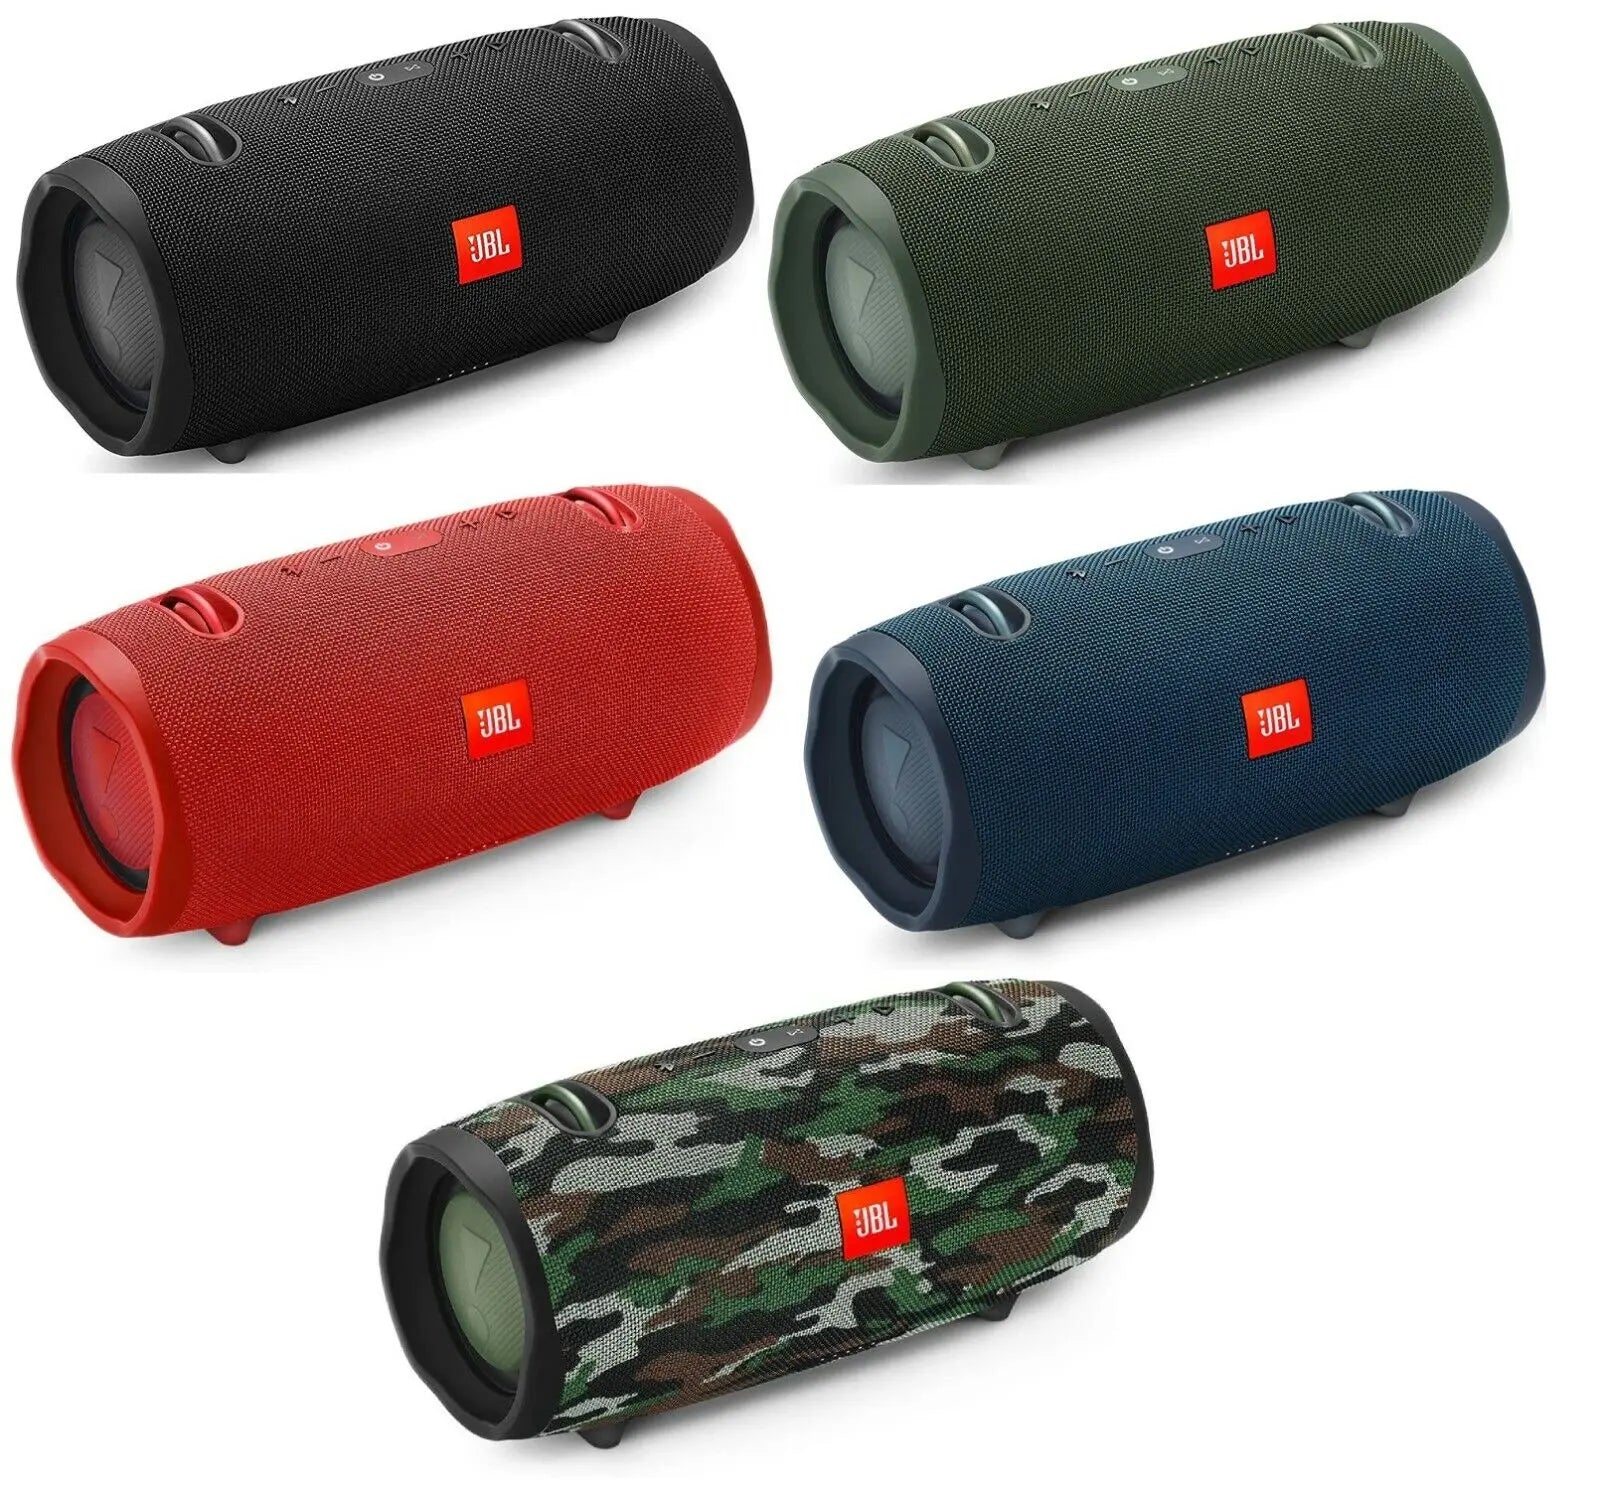 Buy JBL Xtreme 2 Portable Waterproof Wireless Bluetooth Speaker